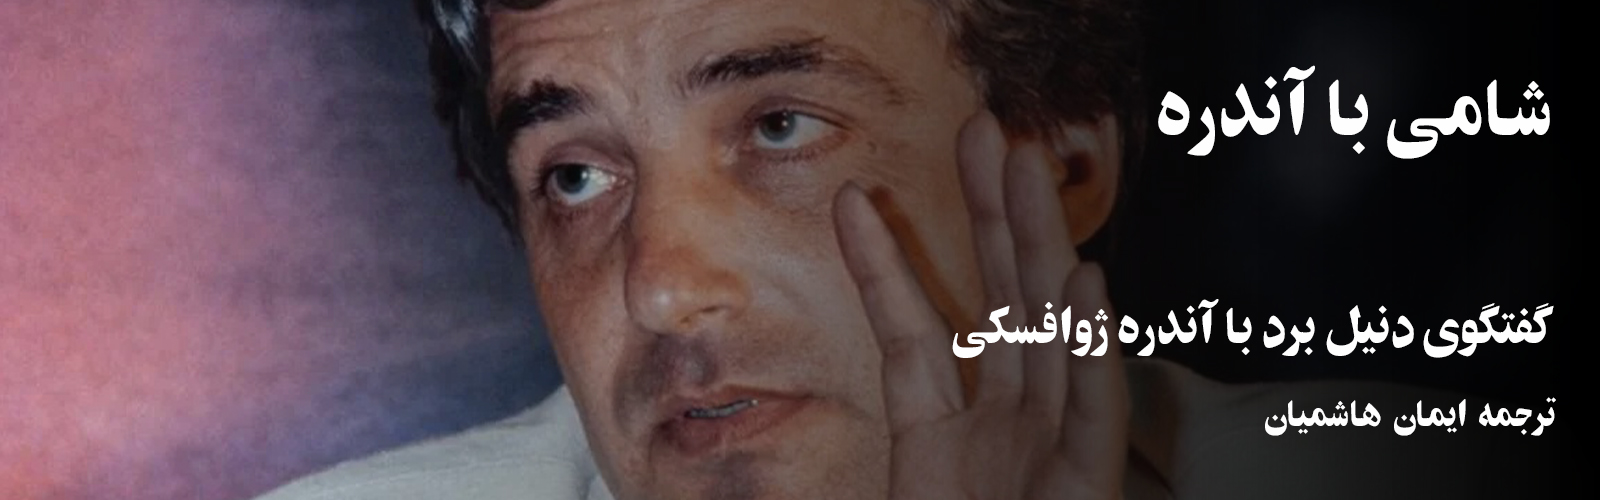 فیلم پن: شامی با آندره؛ گفتگوی دنیل برد با آندره ژوافسکی